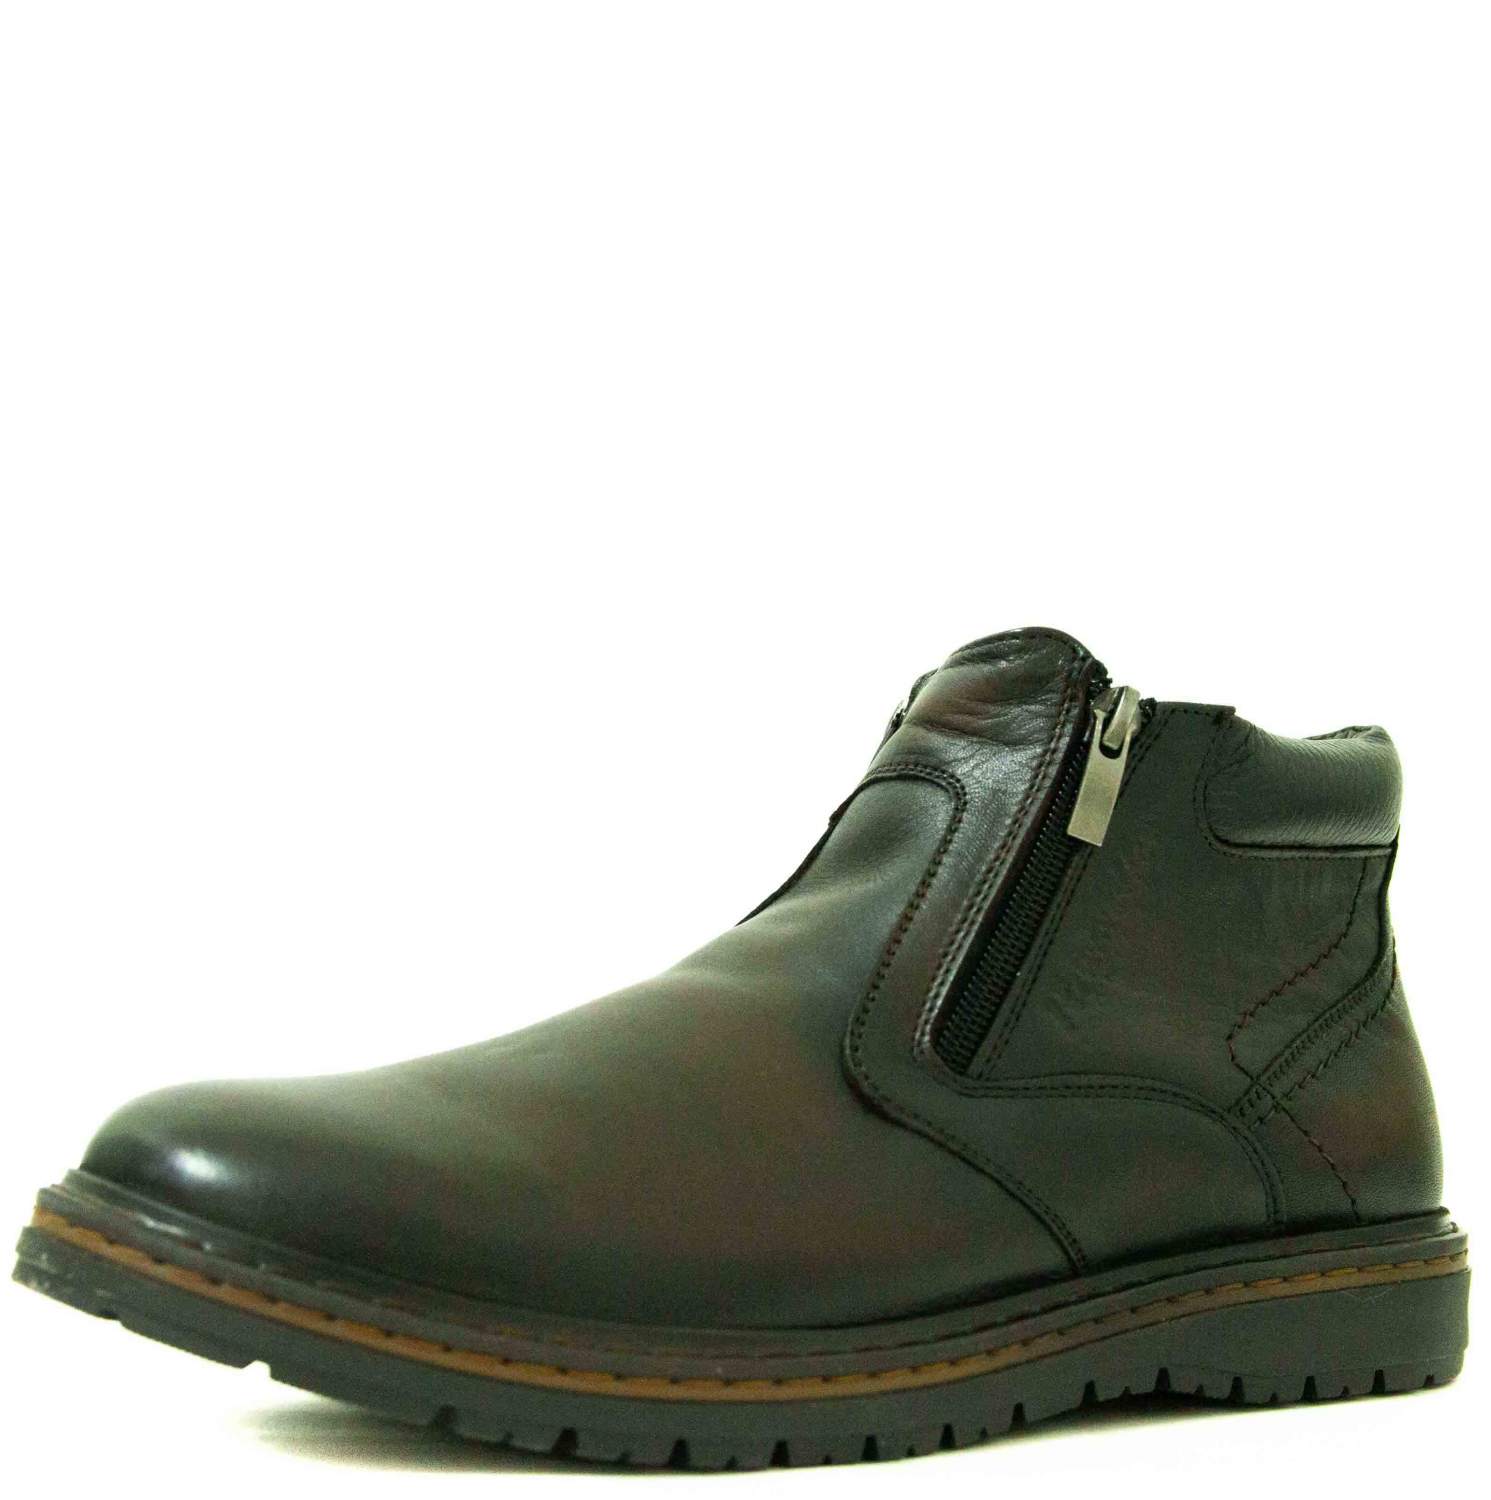 Ботинки мужские Tofa 229493-6 коричневые 40 RU - купить в Москве, цены наМегамаркет